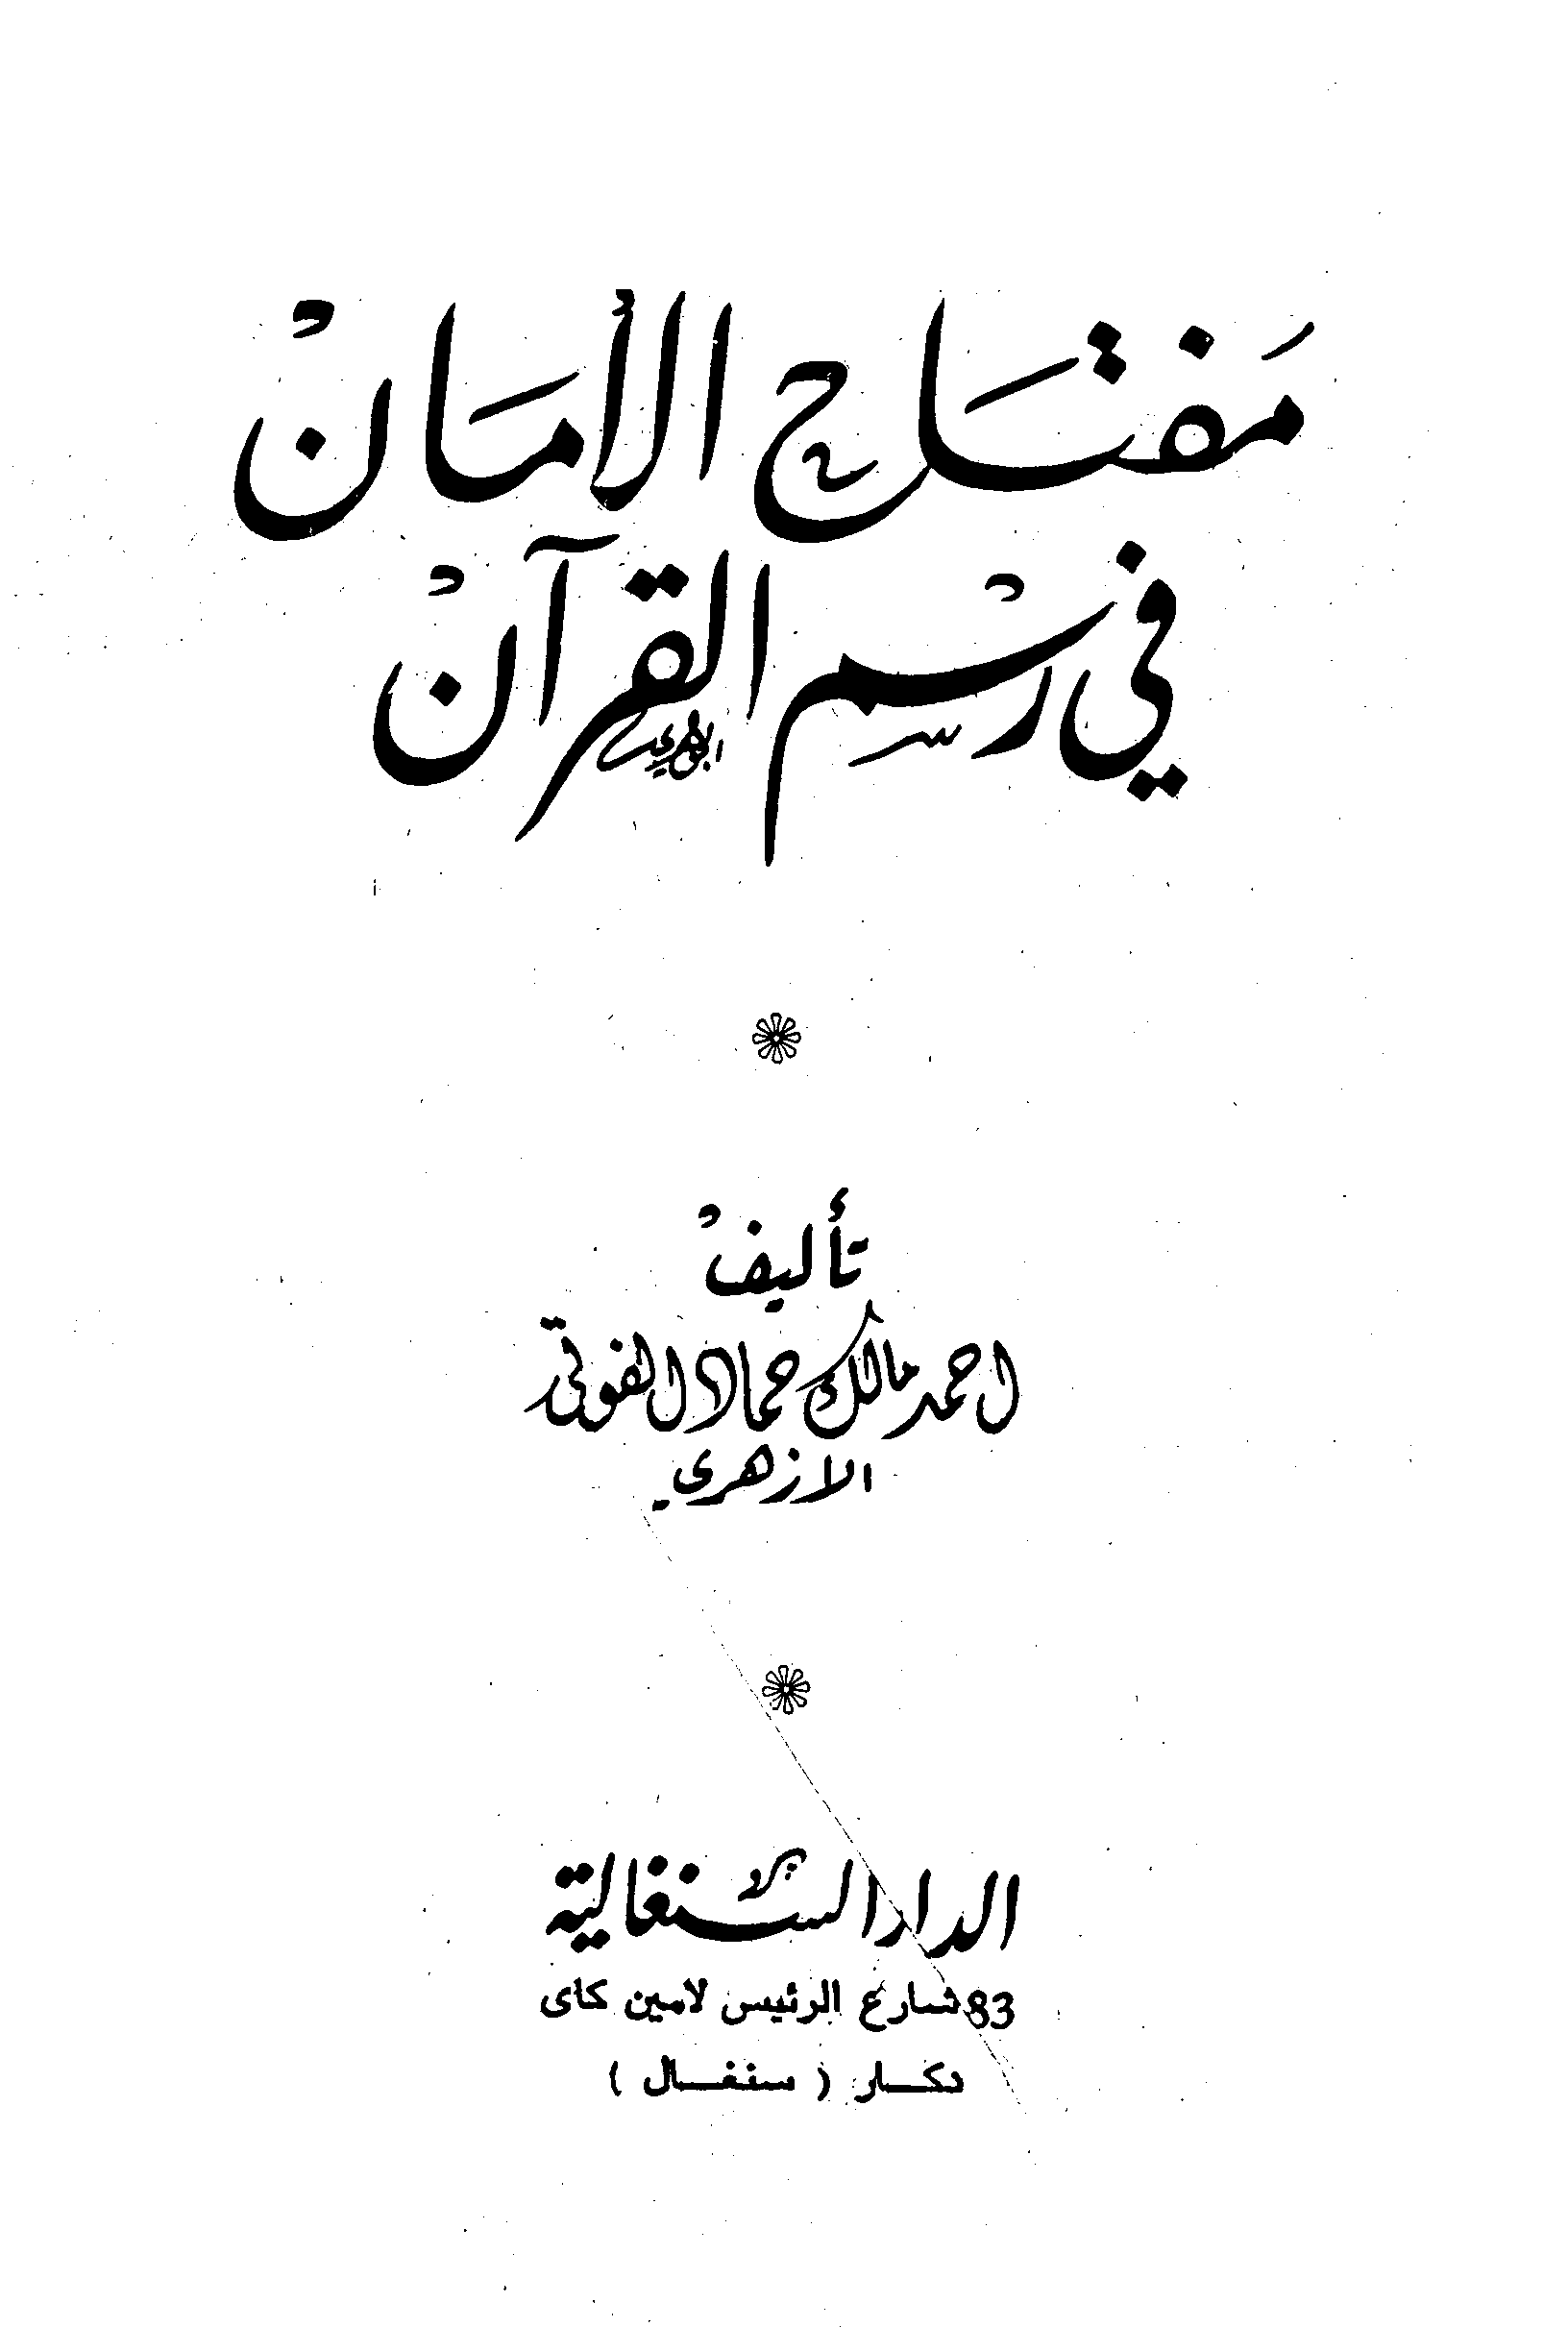 تحميل كتاب مفتاح الأمان في رسم القرآن للمؤلف: الشيخ أحمد مالك حماد الفوتي الأزهري (ت 1419)